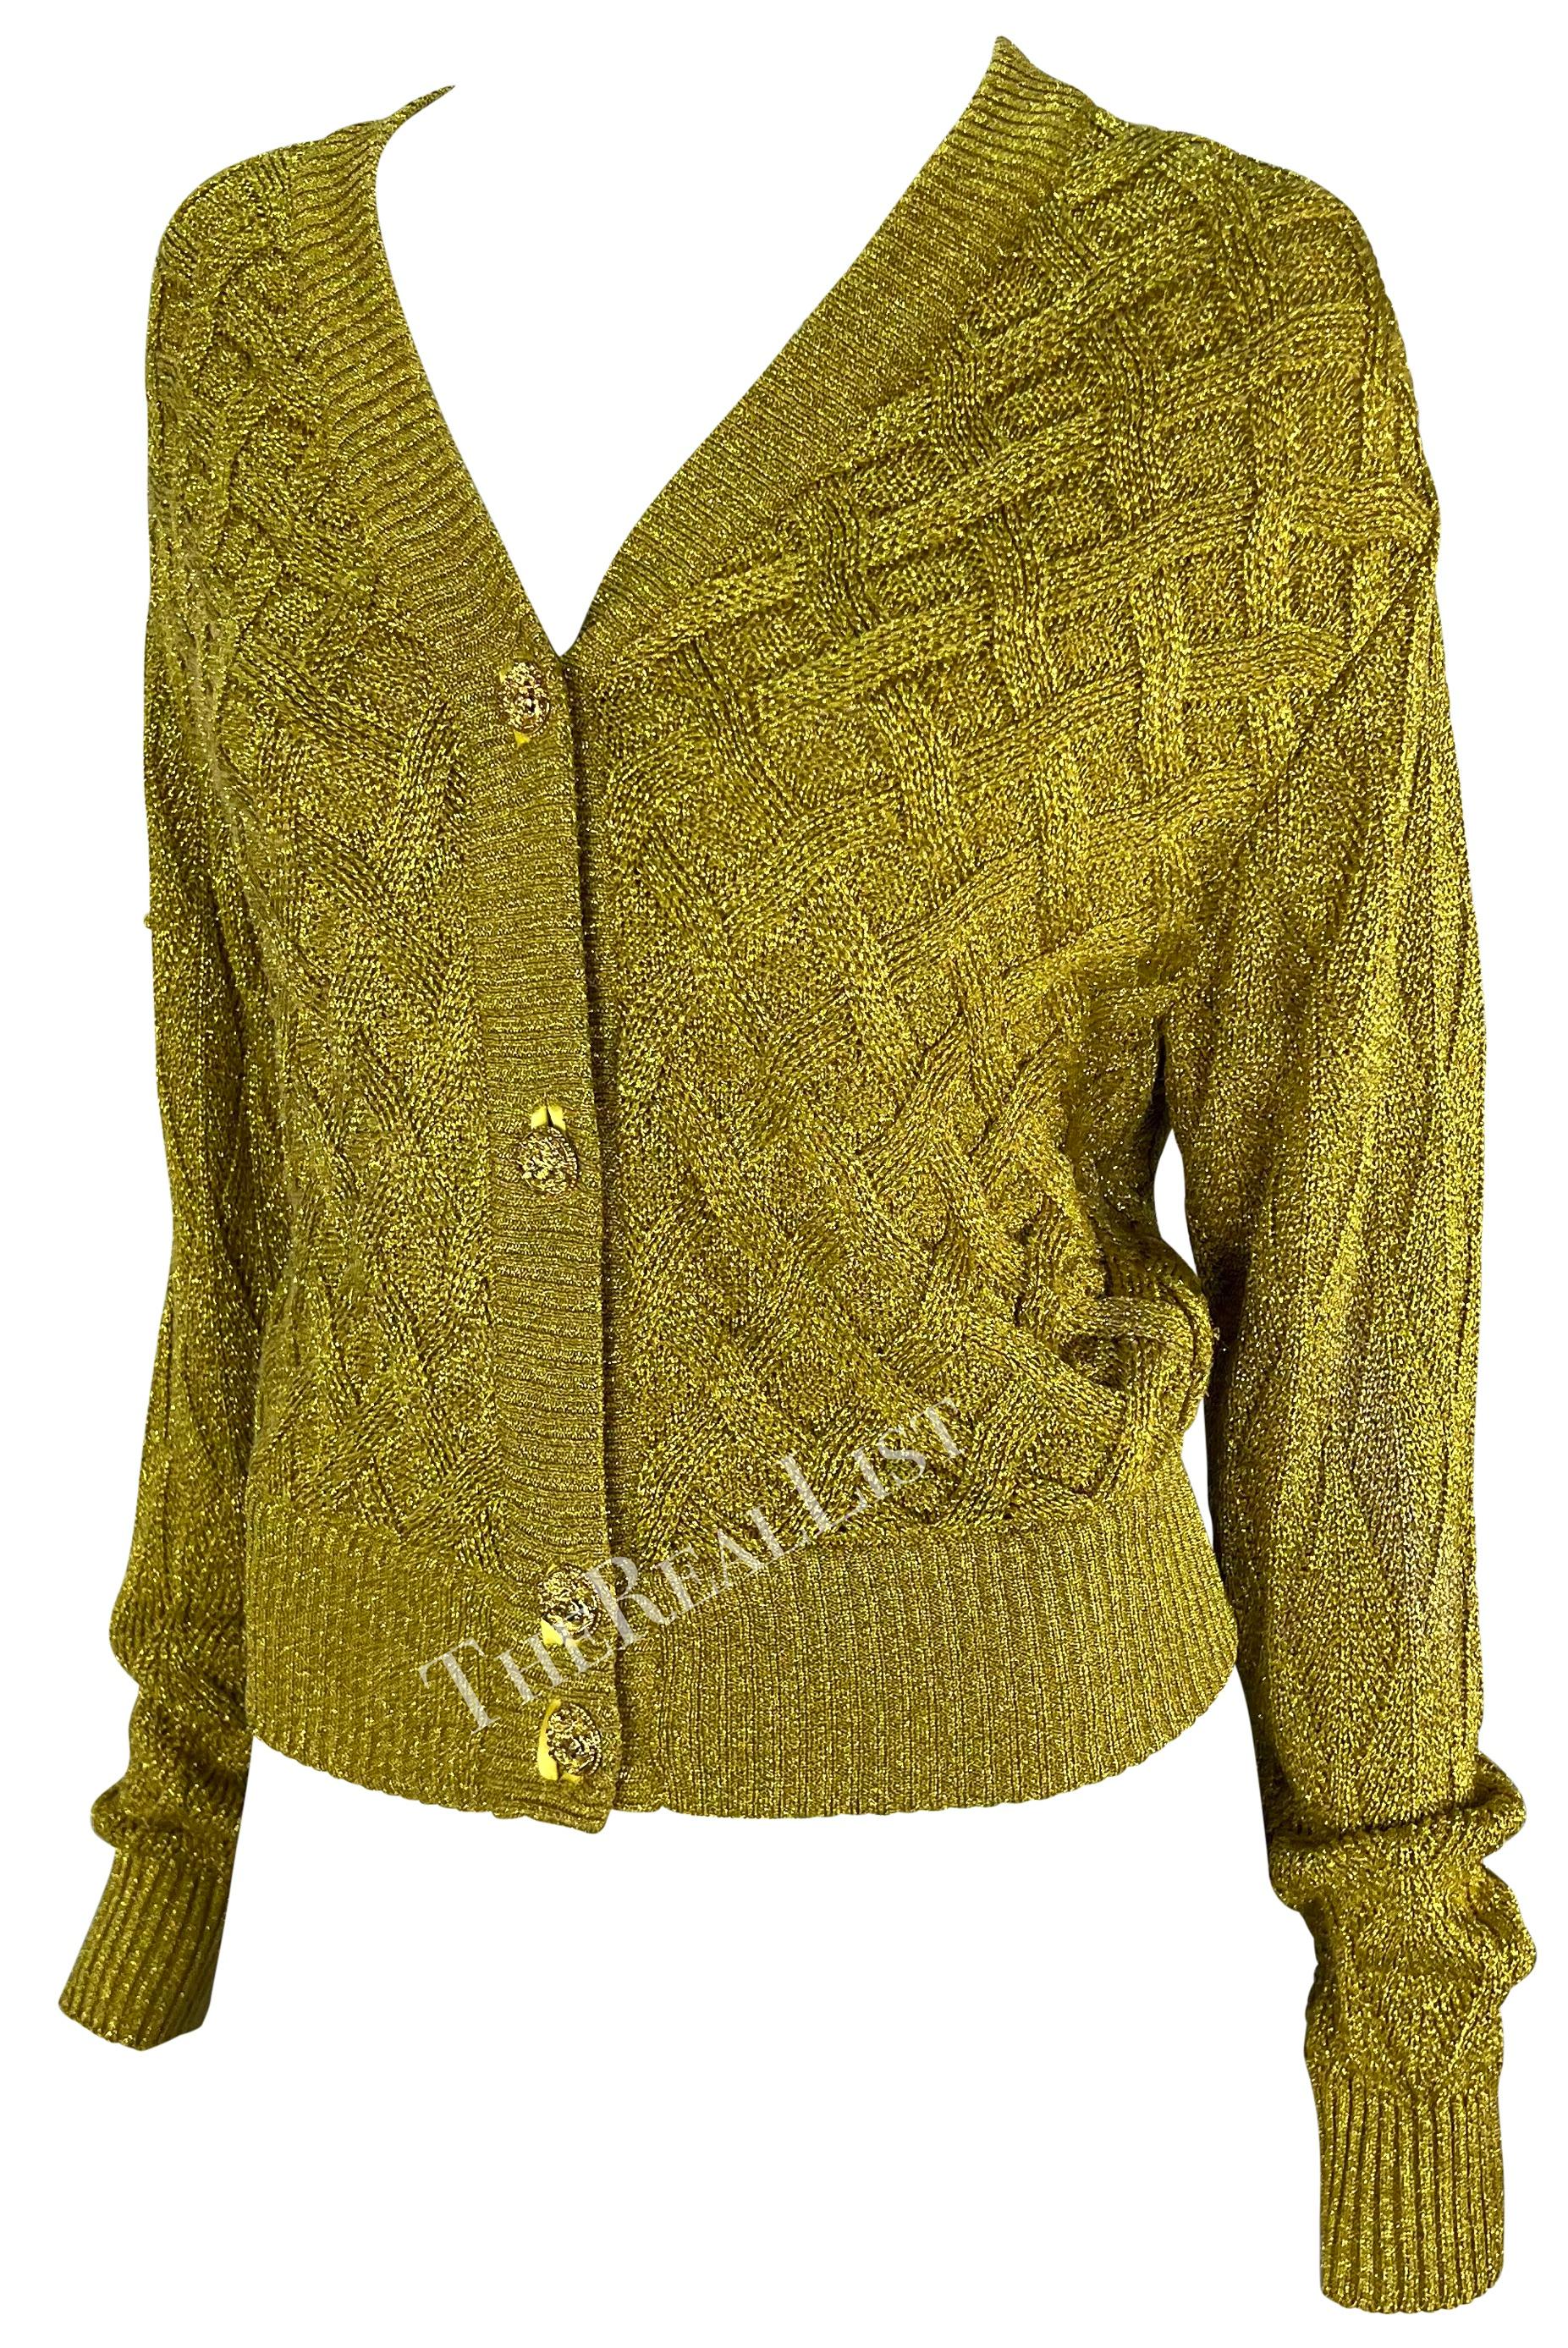 Présentation d'un pull cardigan Atelier Versace en maille câblée dorée, dessiné par Gianni Versace. Issu de la collection automne/hiver 1992, ce pull en maille métallique dorée présente une encolure en V et une fermeture boutonnée ornée de boutons